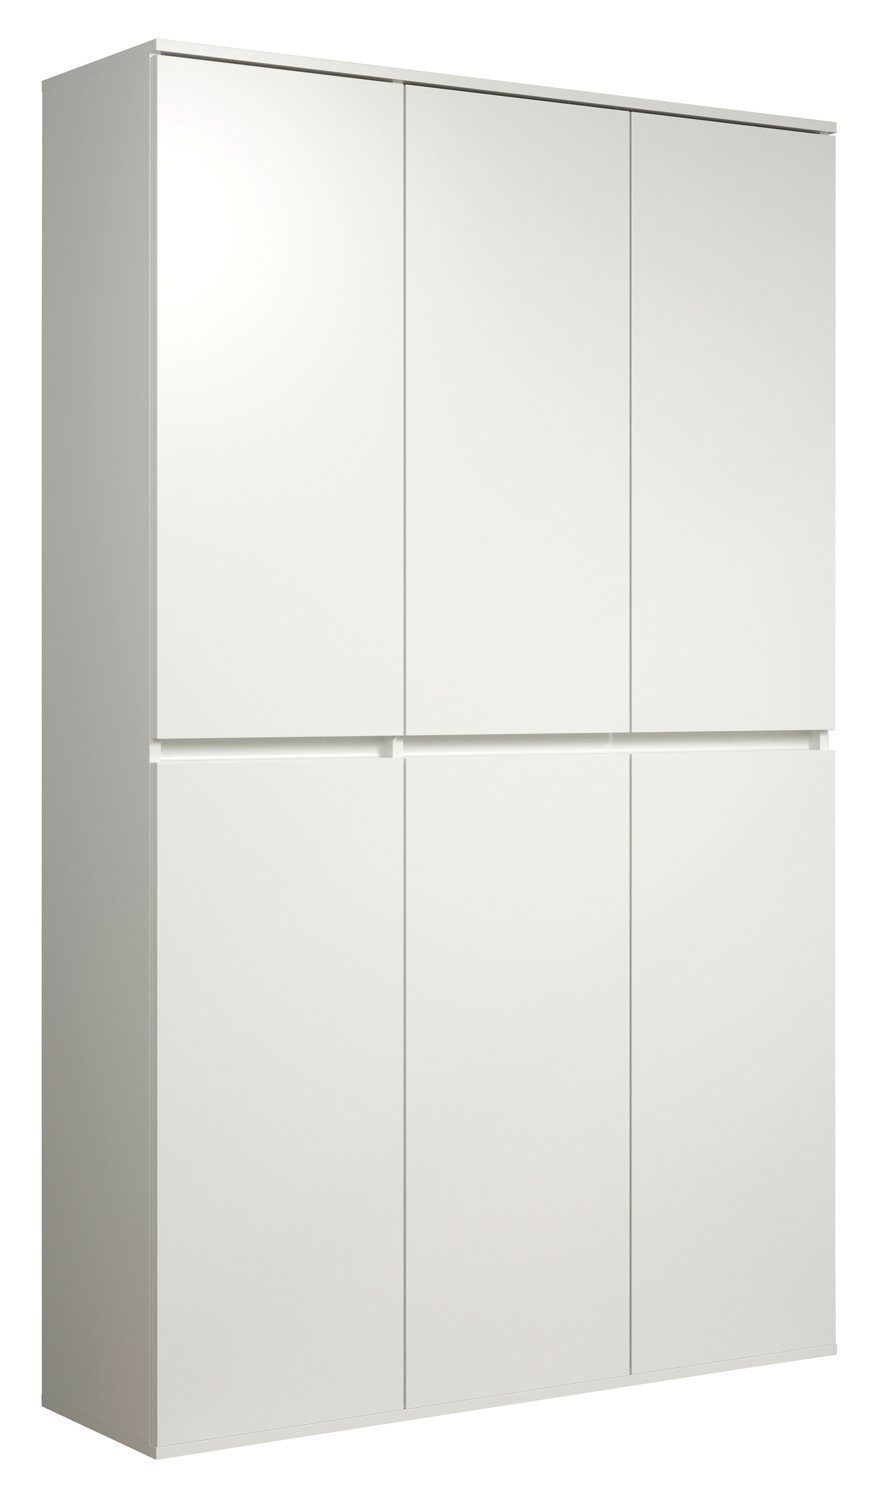 Mehrzweckschrank NEVADA, B 111 cm x H 191 cm, Weiß, 6 Двері